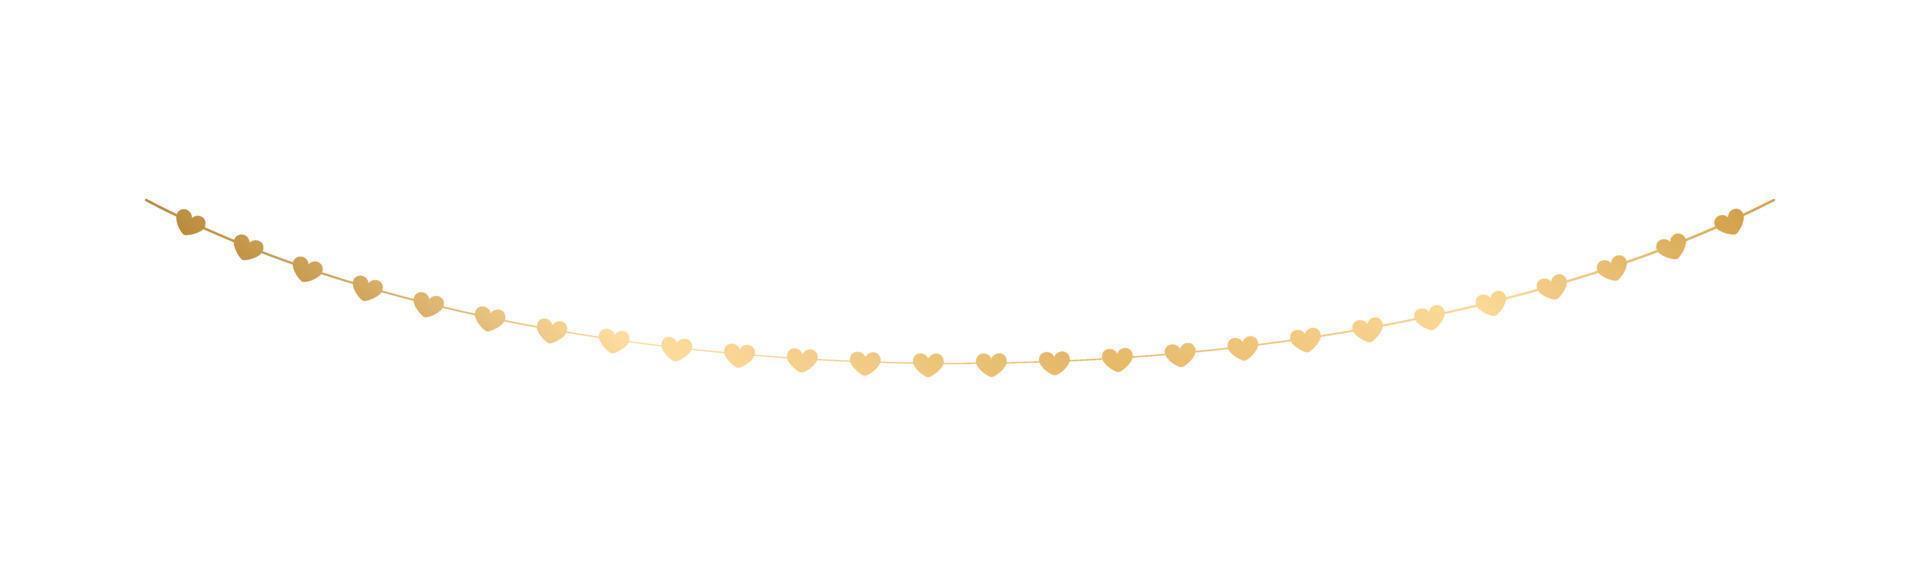 goud harten guirlande, feestelijk verjaardag, valentijnsdag partij viering, hangende Gorzen slingers vector illustratie